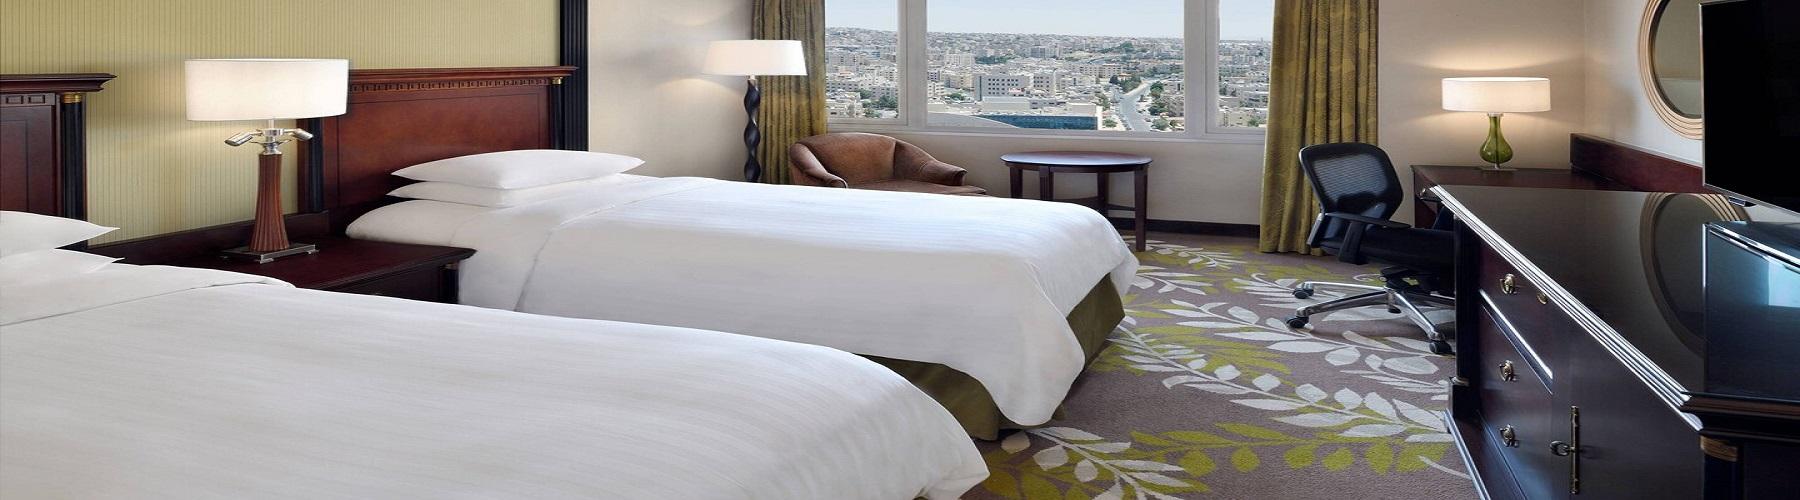 Забронировать отель Amman Marriott Hotel